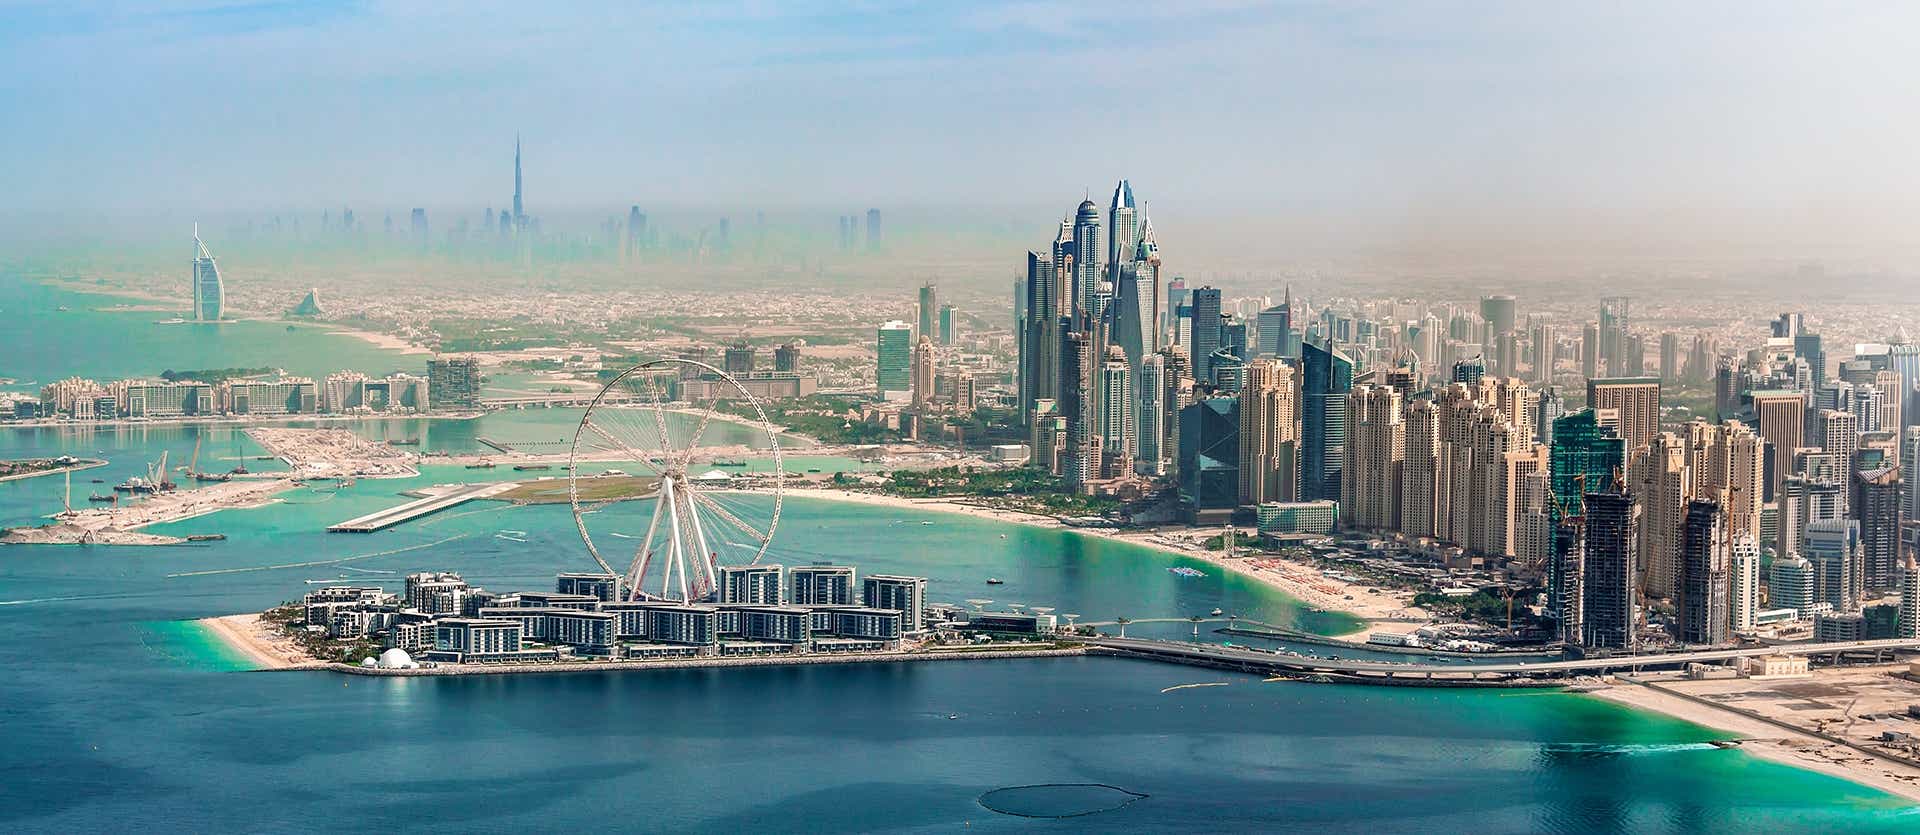 Puerto de Dubái <span class="iconos separador"></span> Dubai <span class="iconos separador"></span> Emiratos Árabes Unidos